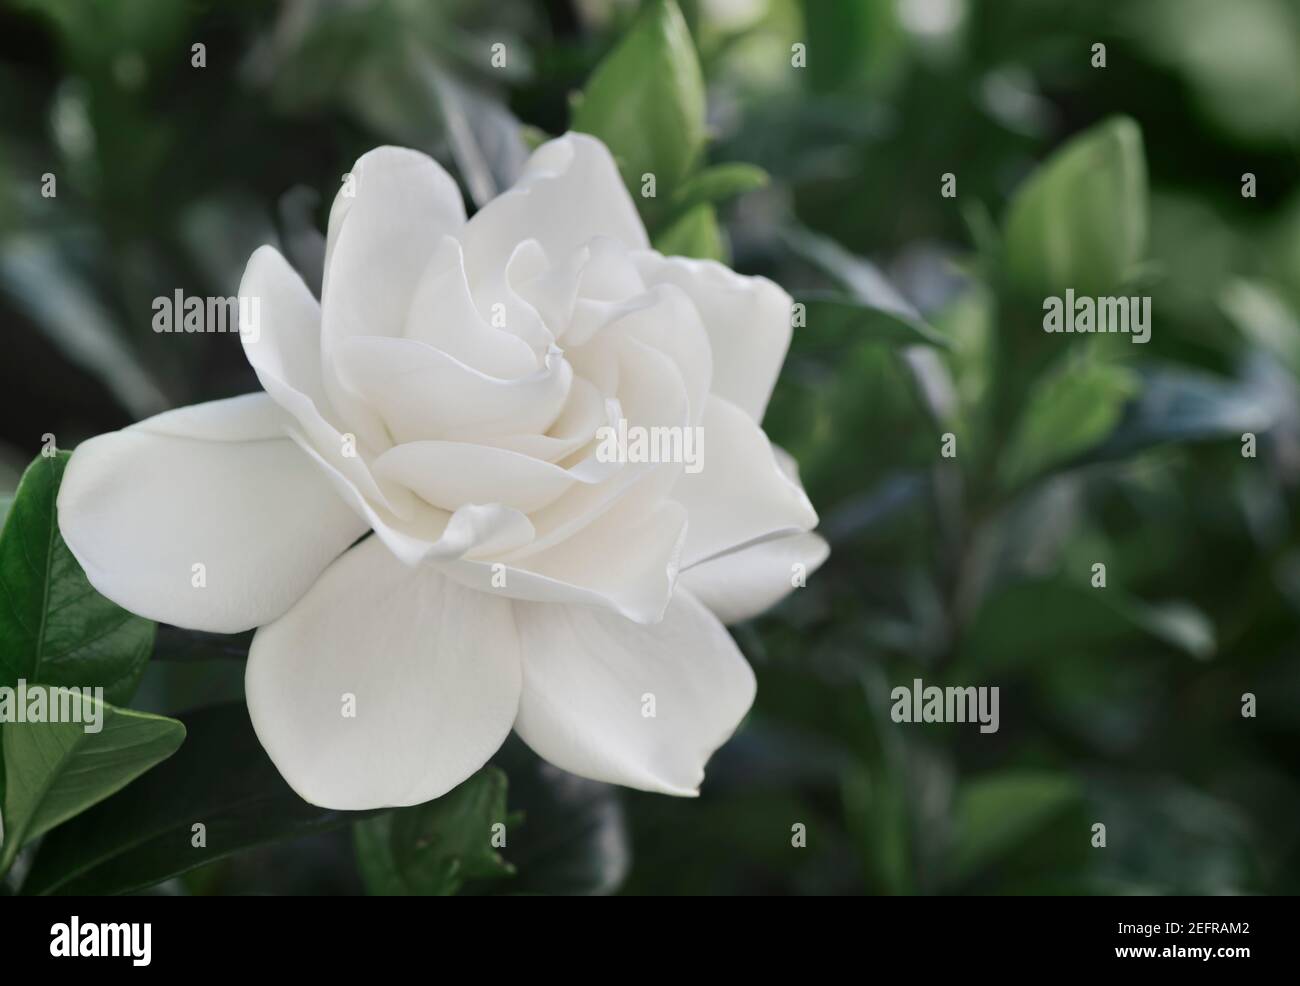 Gardenia Jasminoides, closeup of white flower on a flowering plant Stock Photo